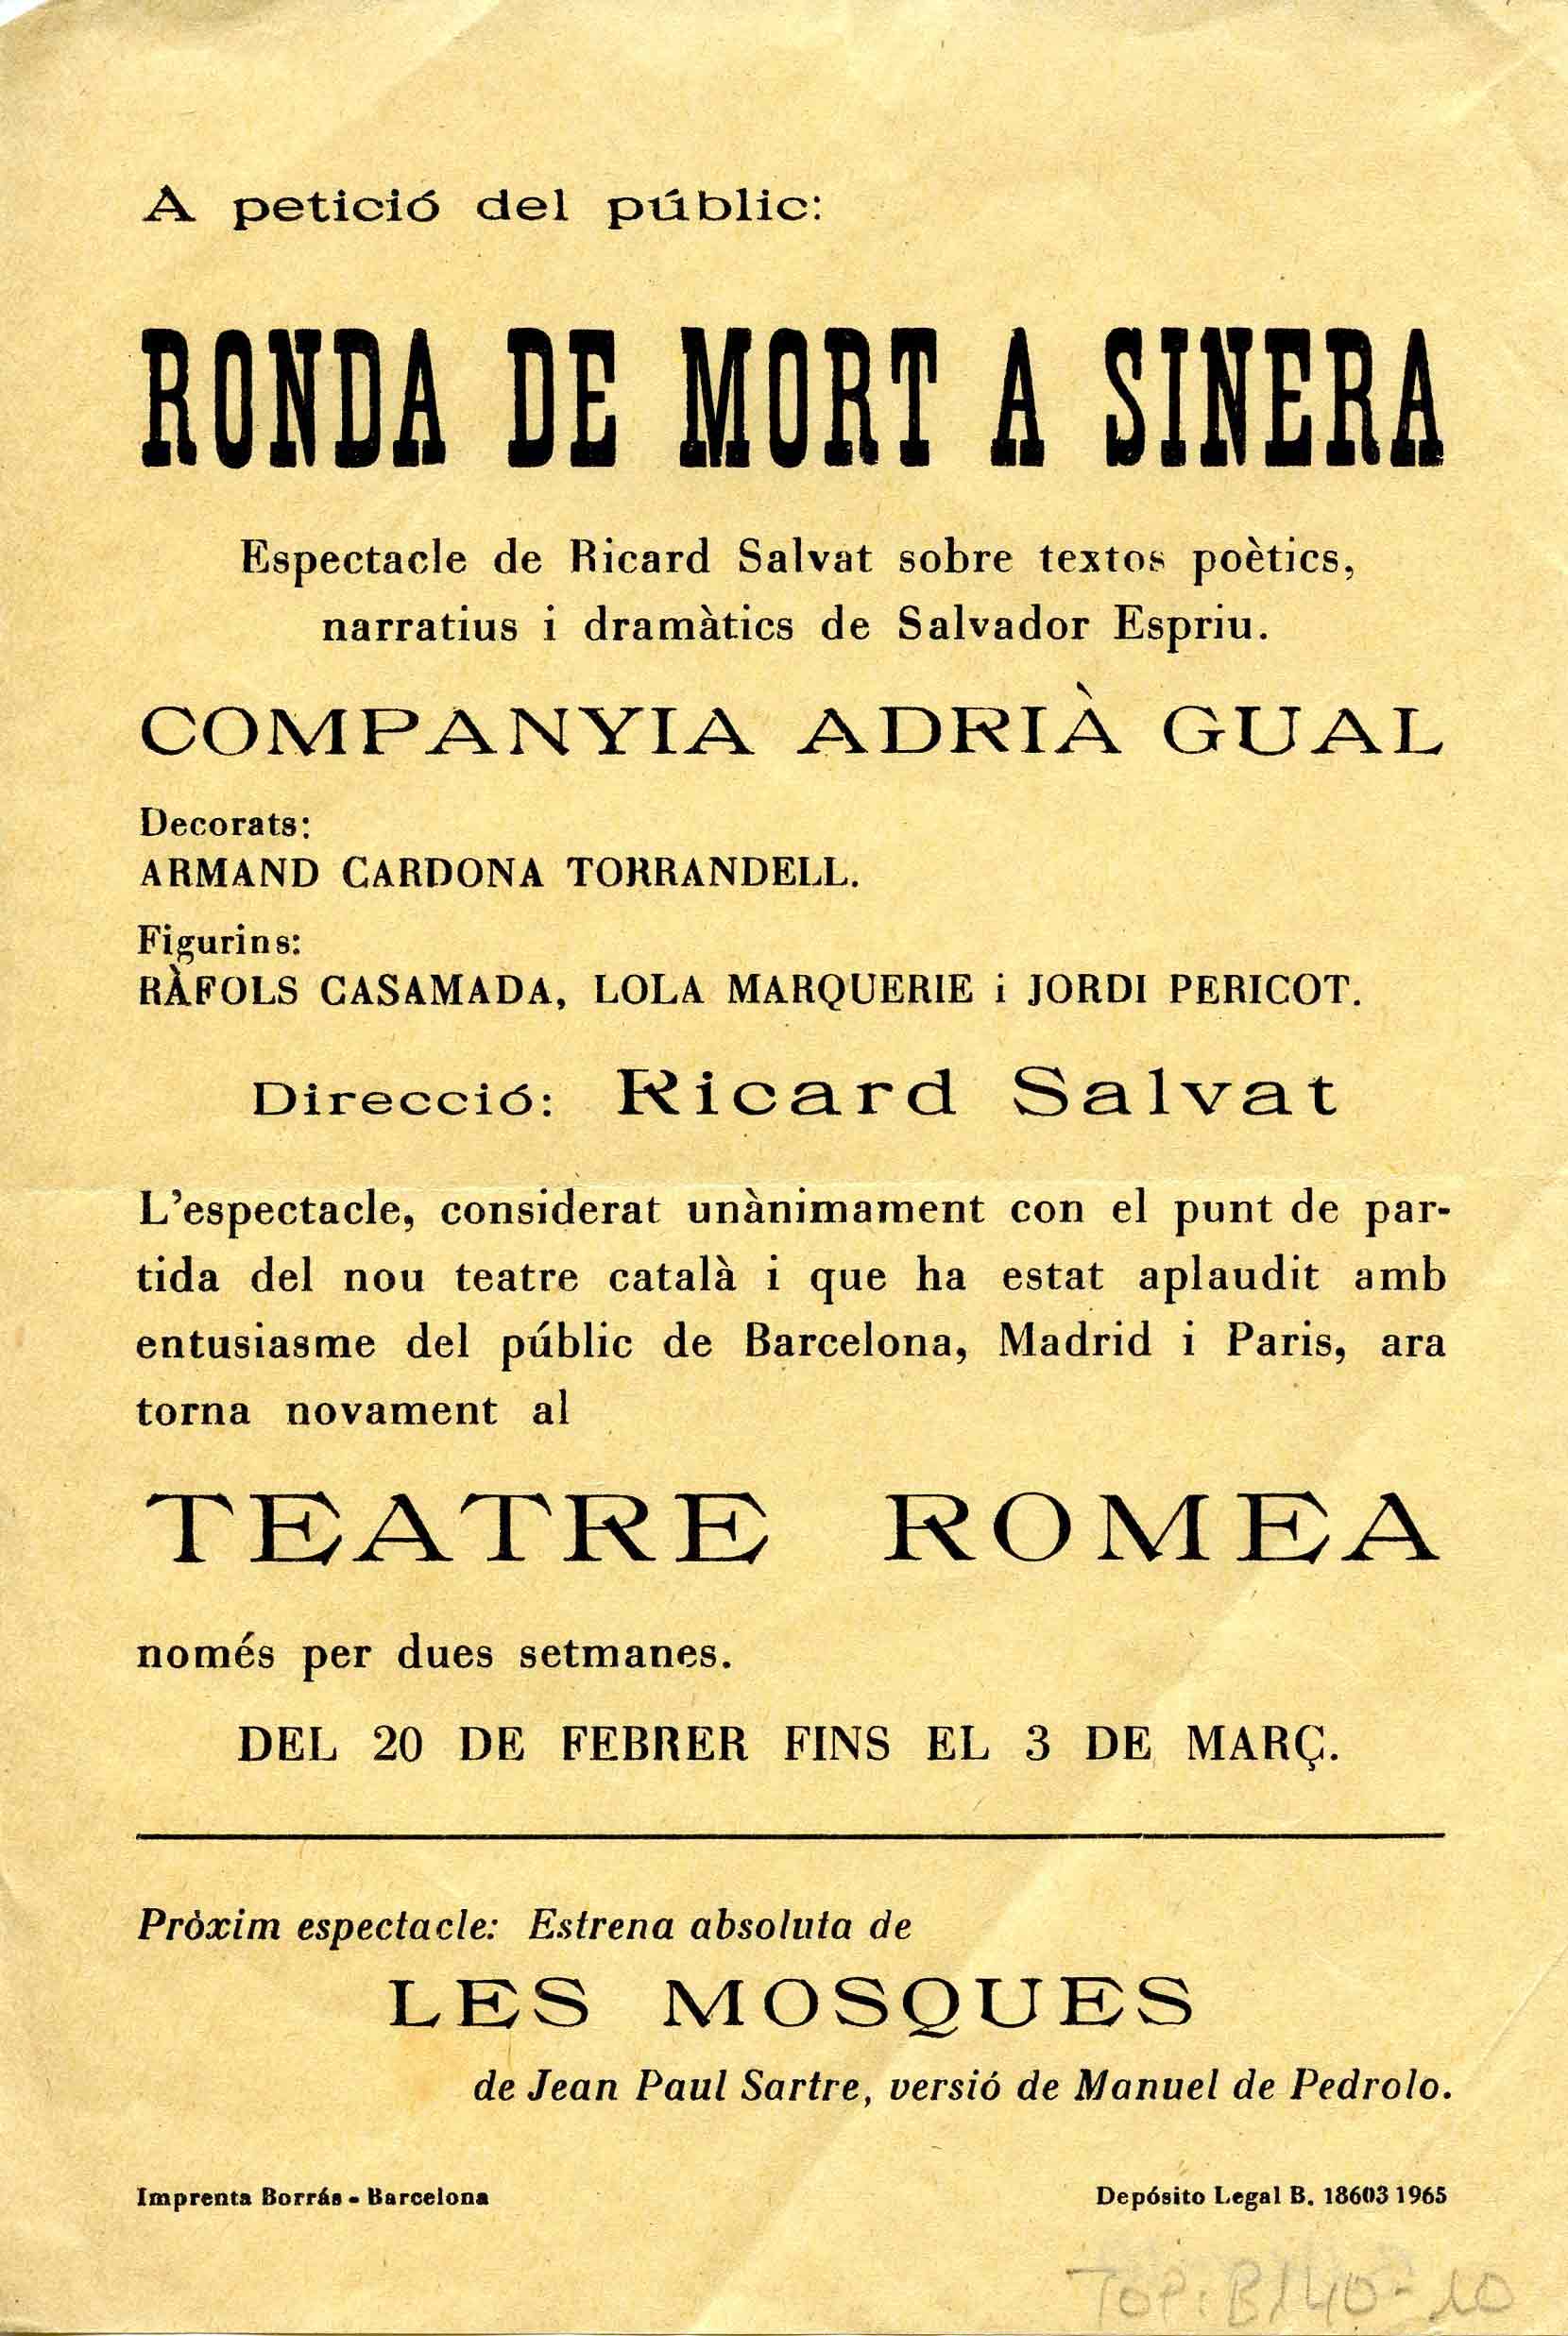 Programa. Ronda de mort a Sinera. Companyia Adrià Gual. Teatre Romea, 1968